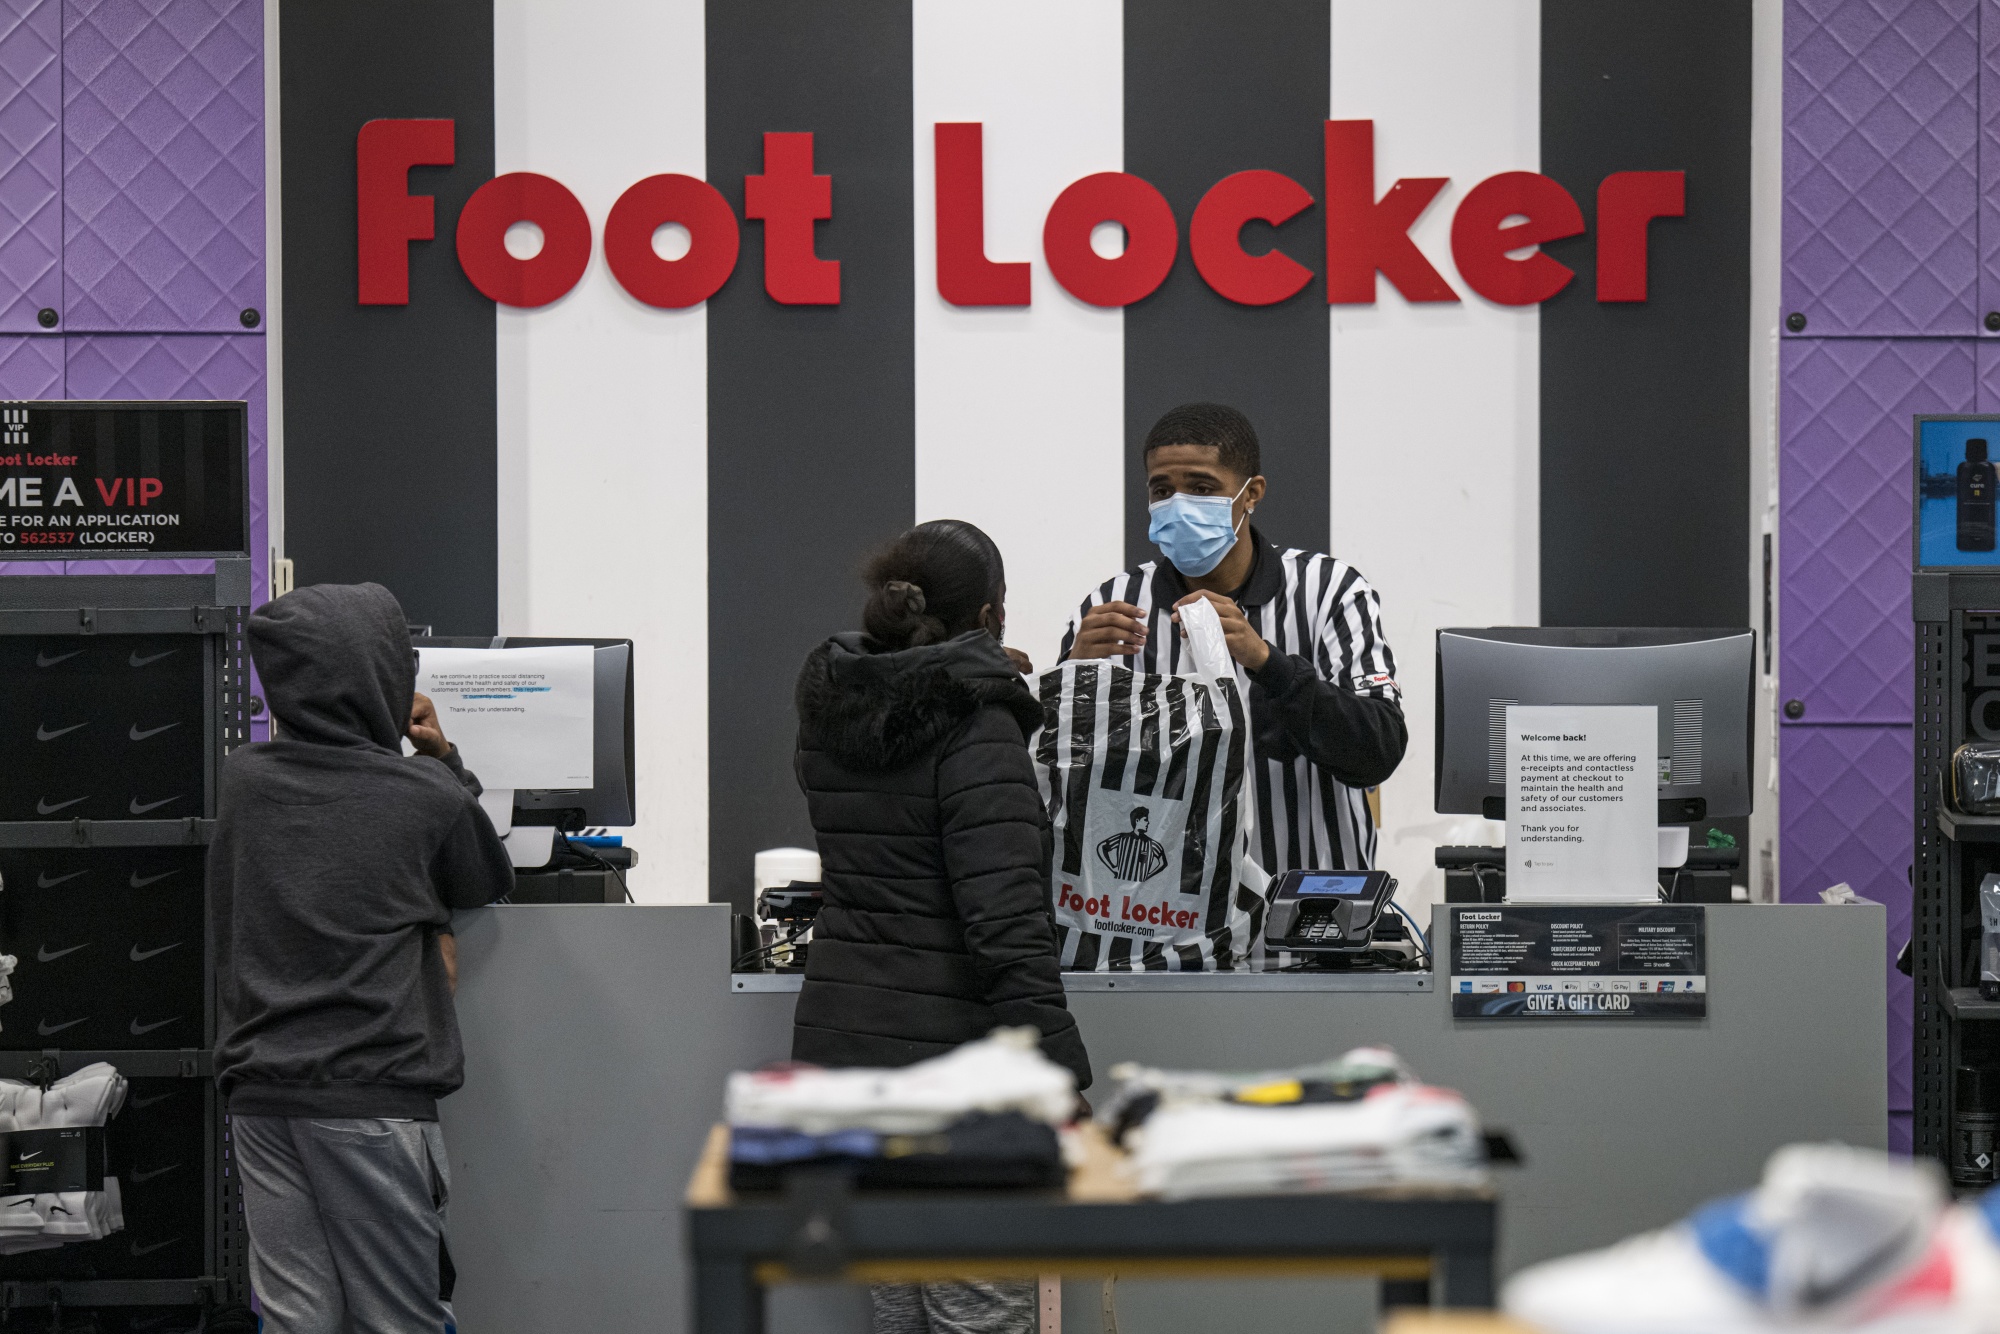 Foot Locker employees be like: 